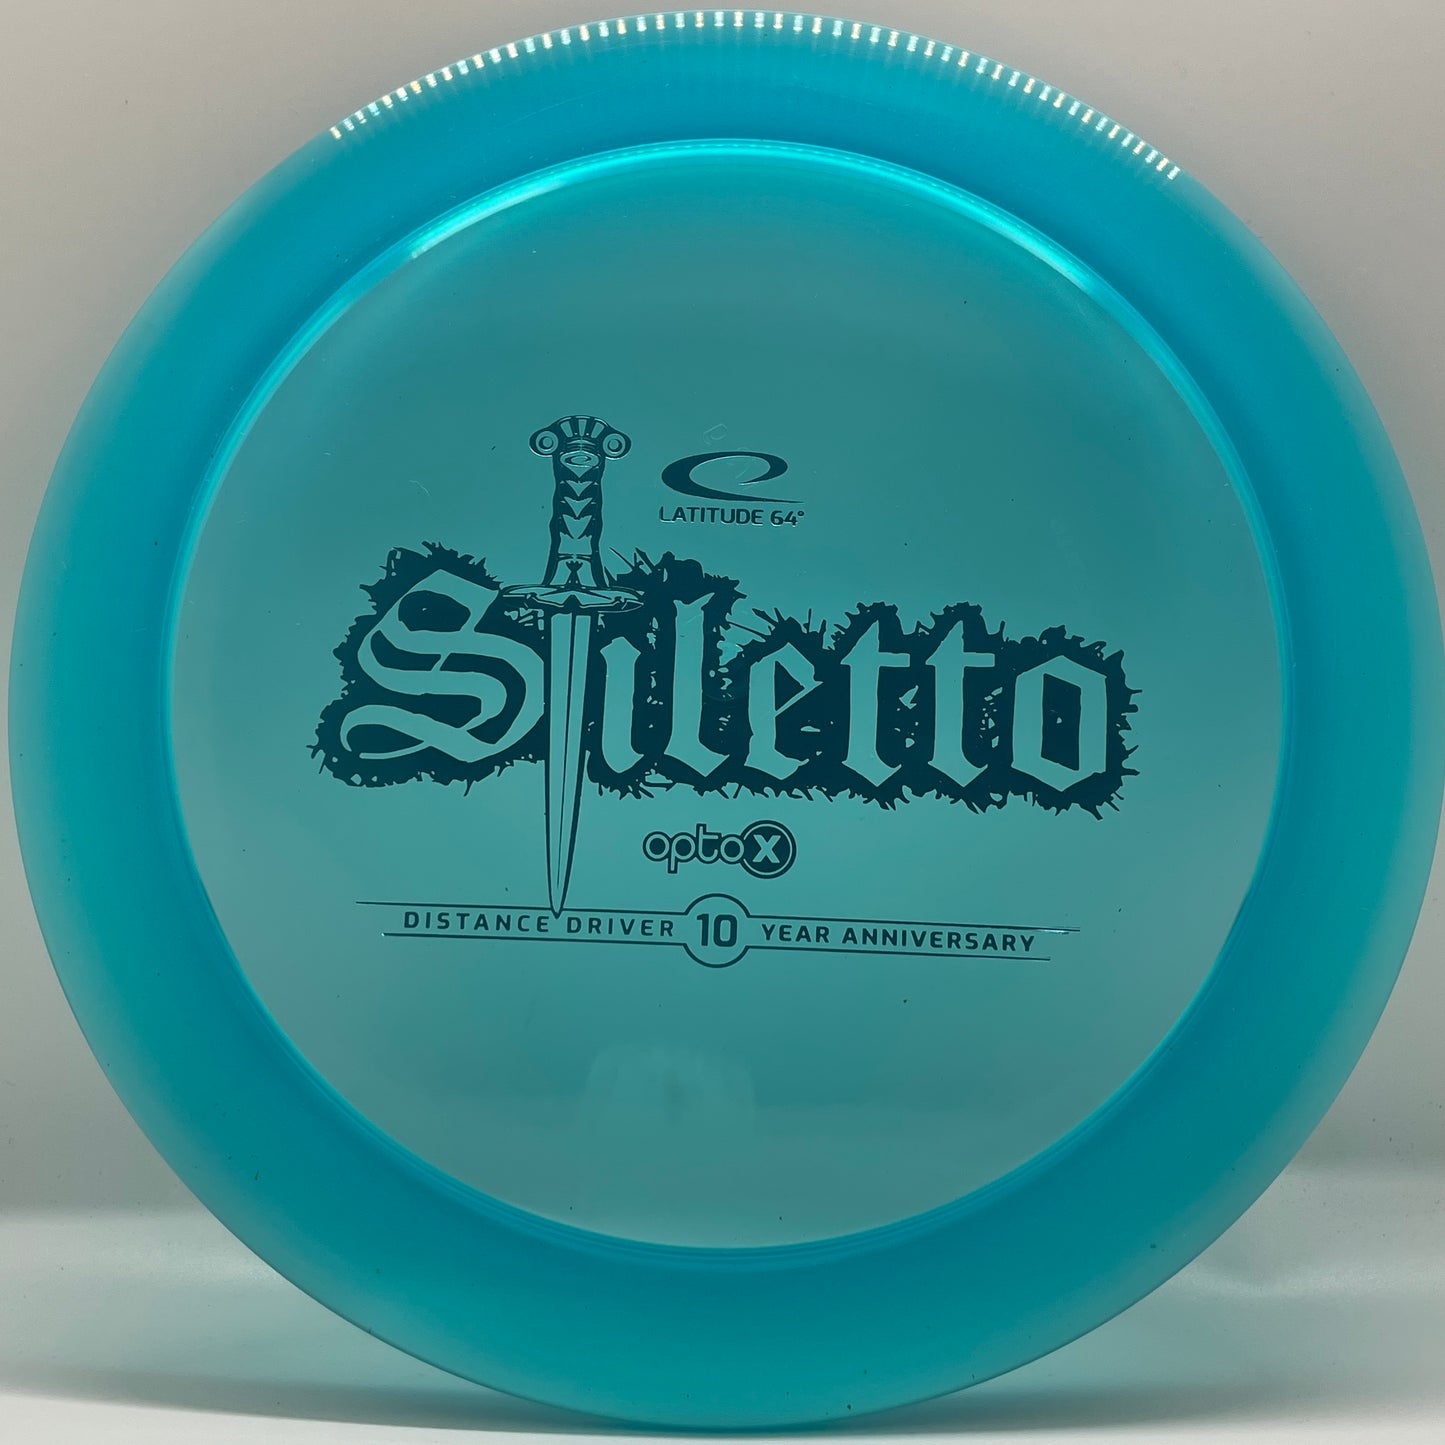 Latitude 64 Opto-X Stiletto 10th Anniversary - Distance Driver